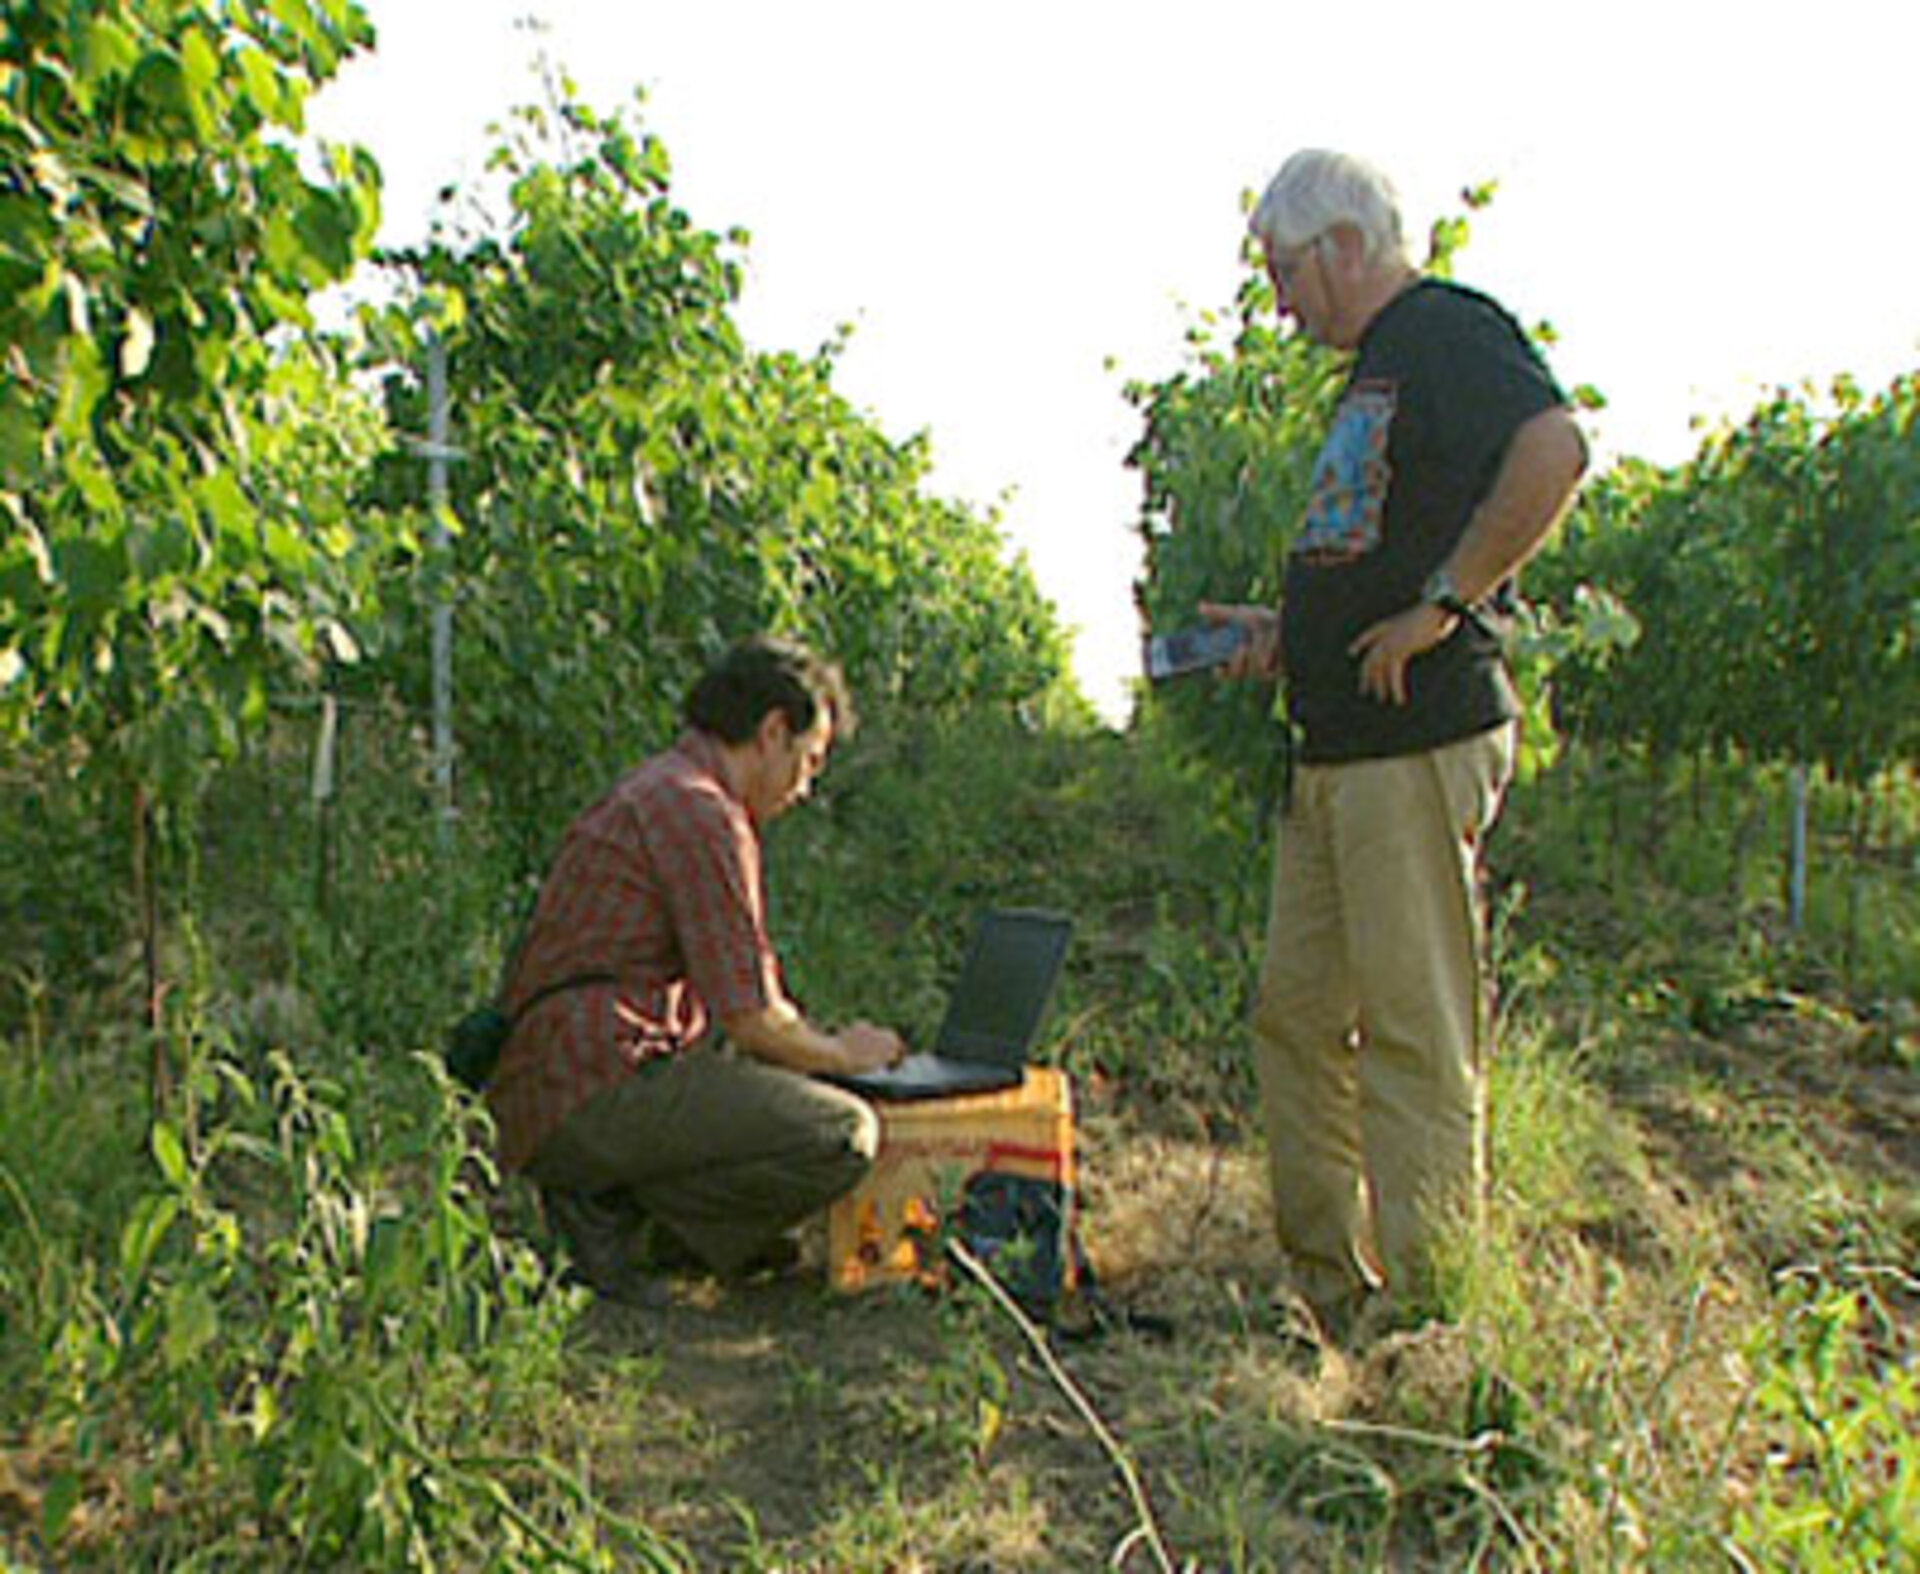 Working in vineyard